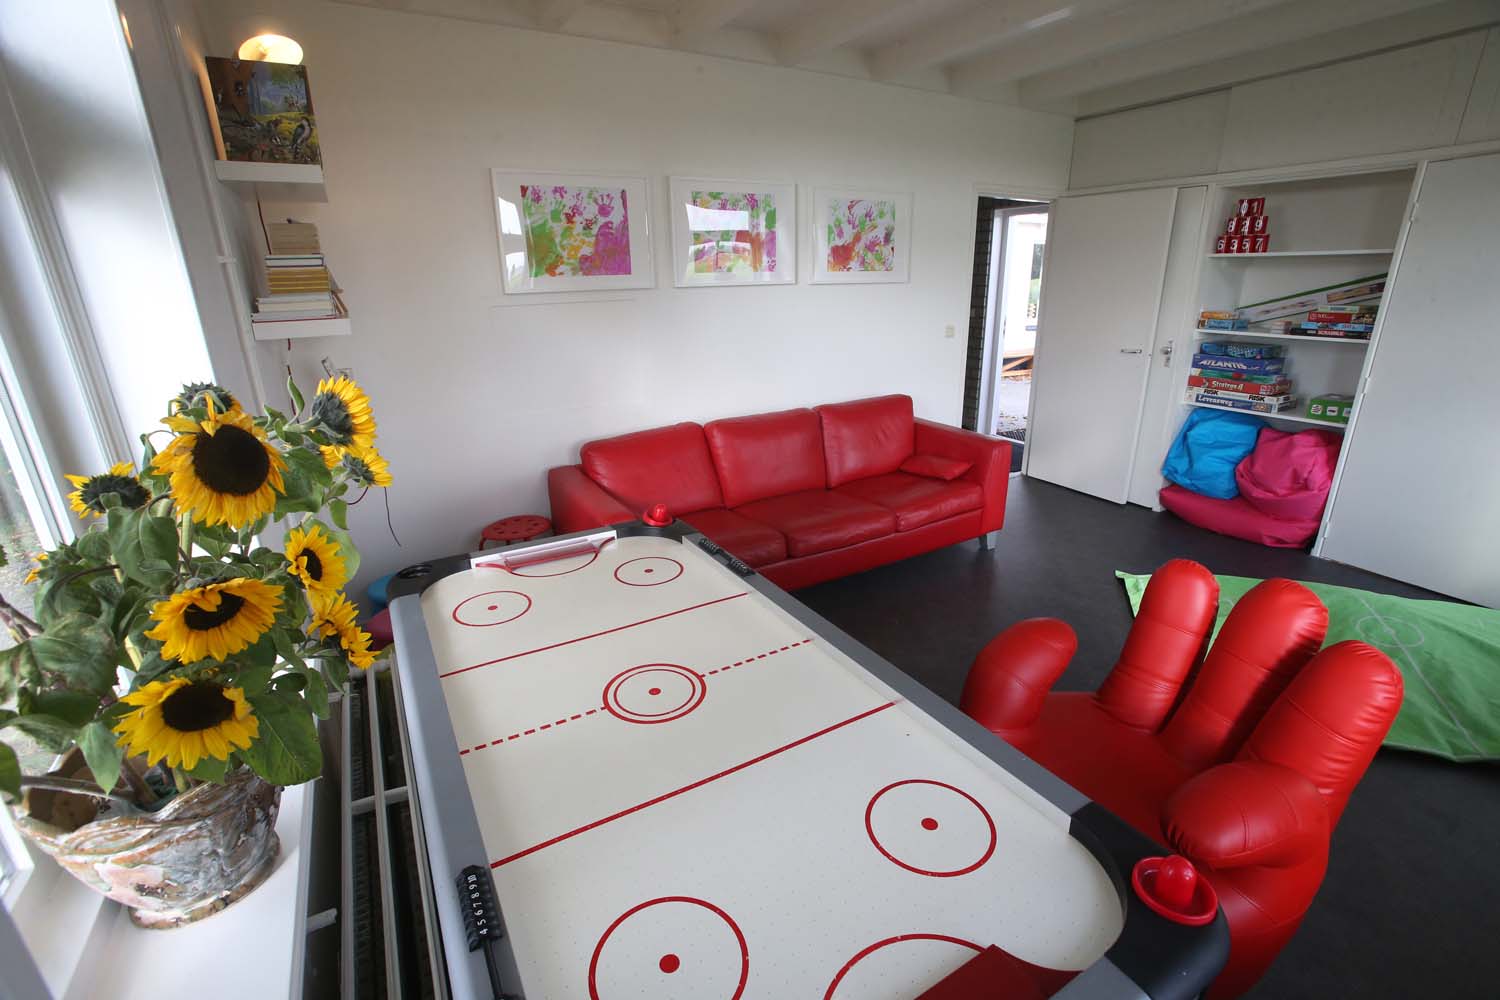 De speelkamer heeft o.a. een ijshockeytafel en een televisiescherm voor een spelcomputer